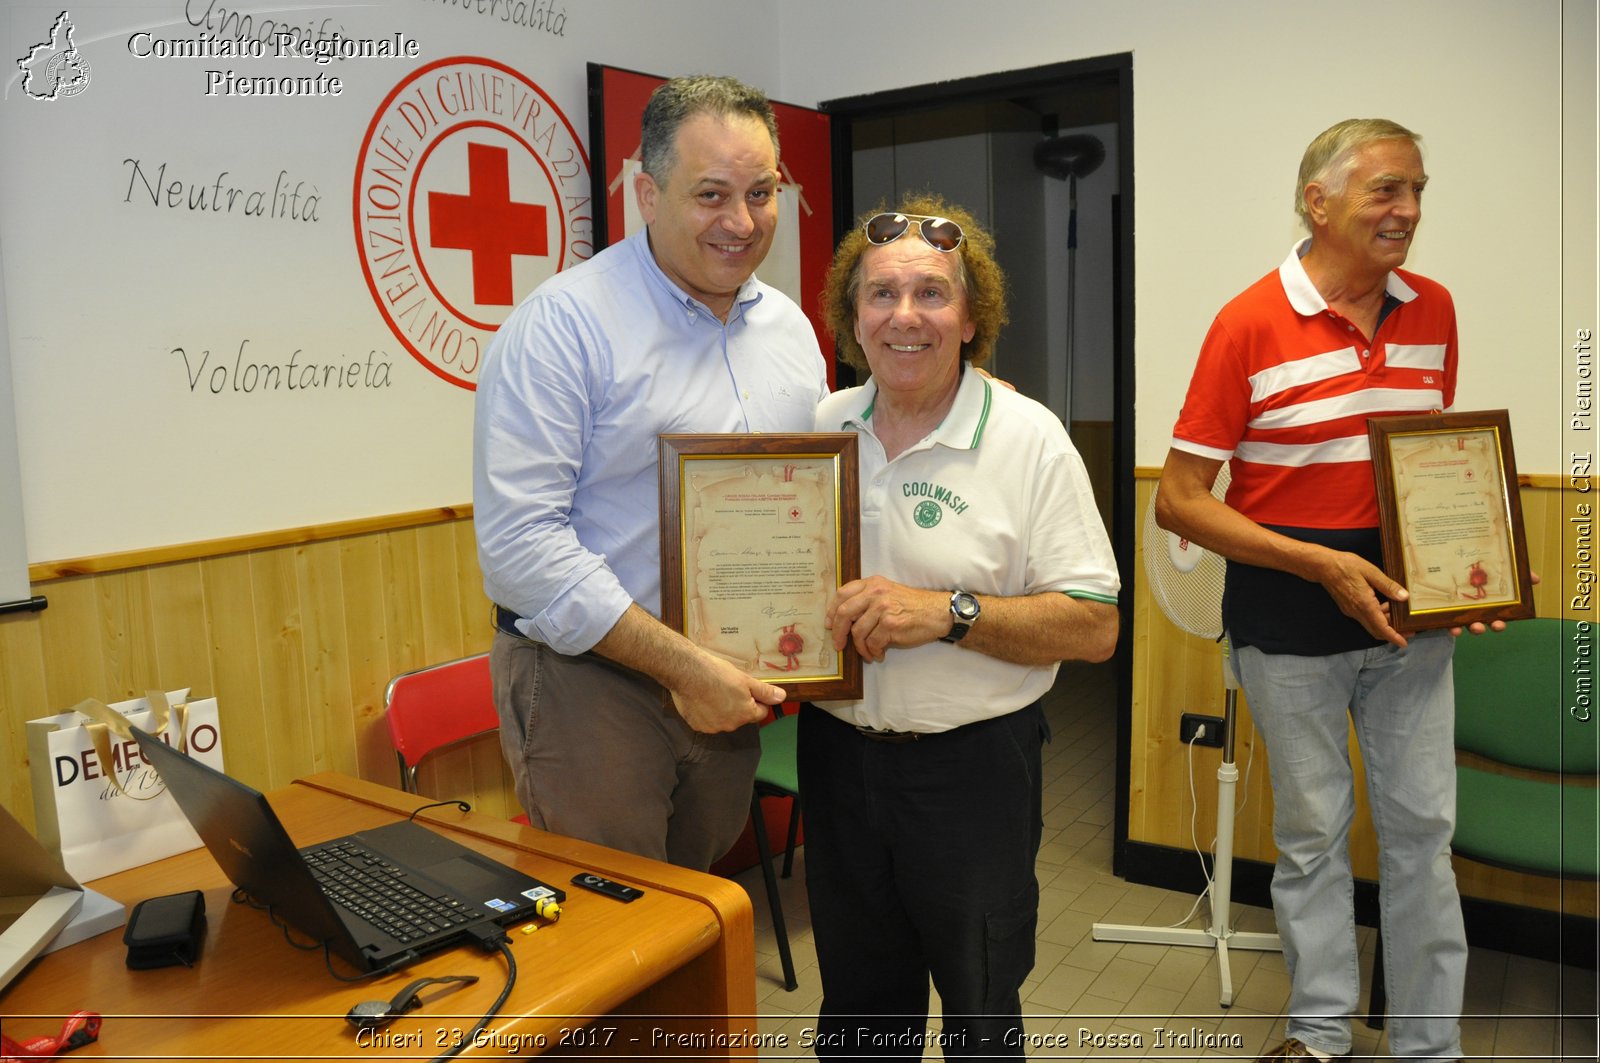 Chieri 23 Giugno 2017 - Premiazione Soci Fondatori - Croce Rossa Italiana- Comitato Regionale del Piemonte